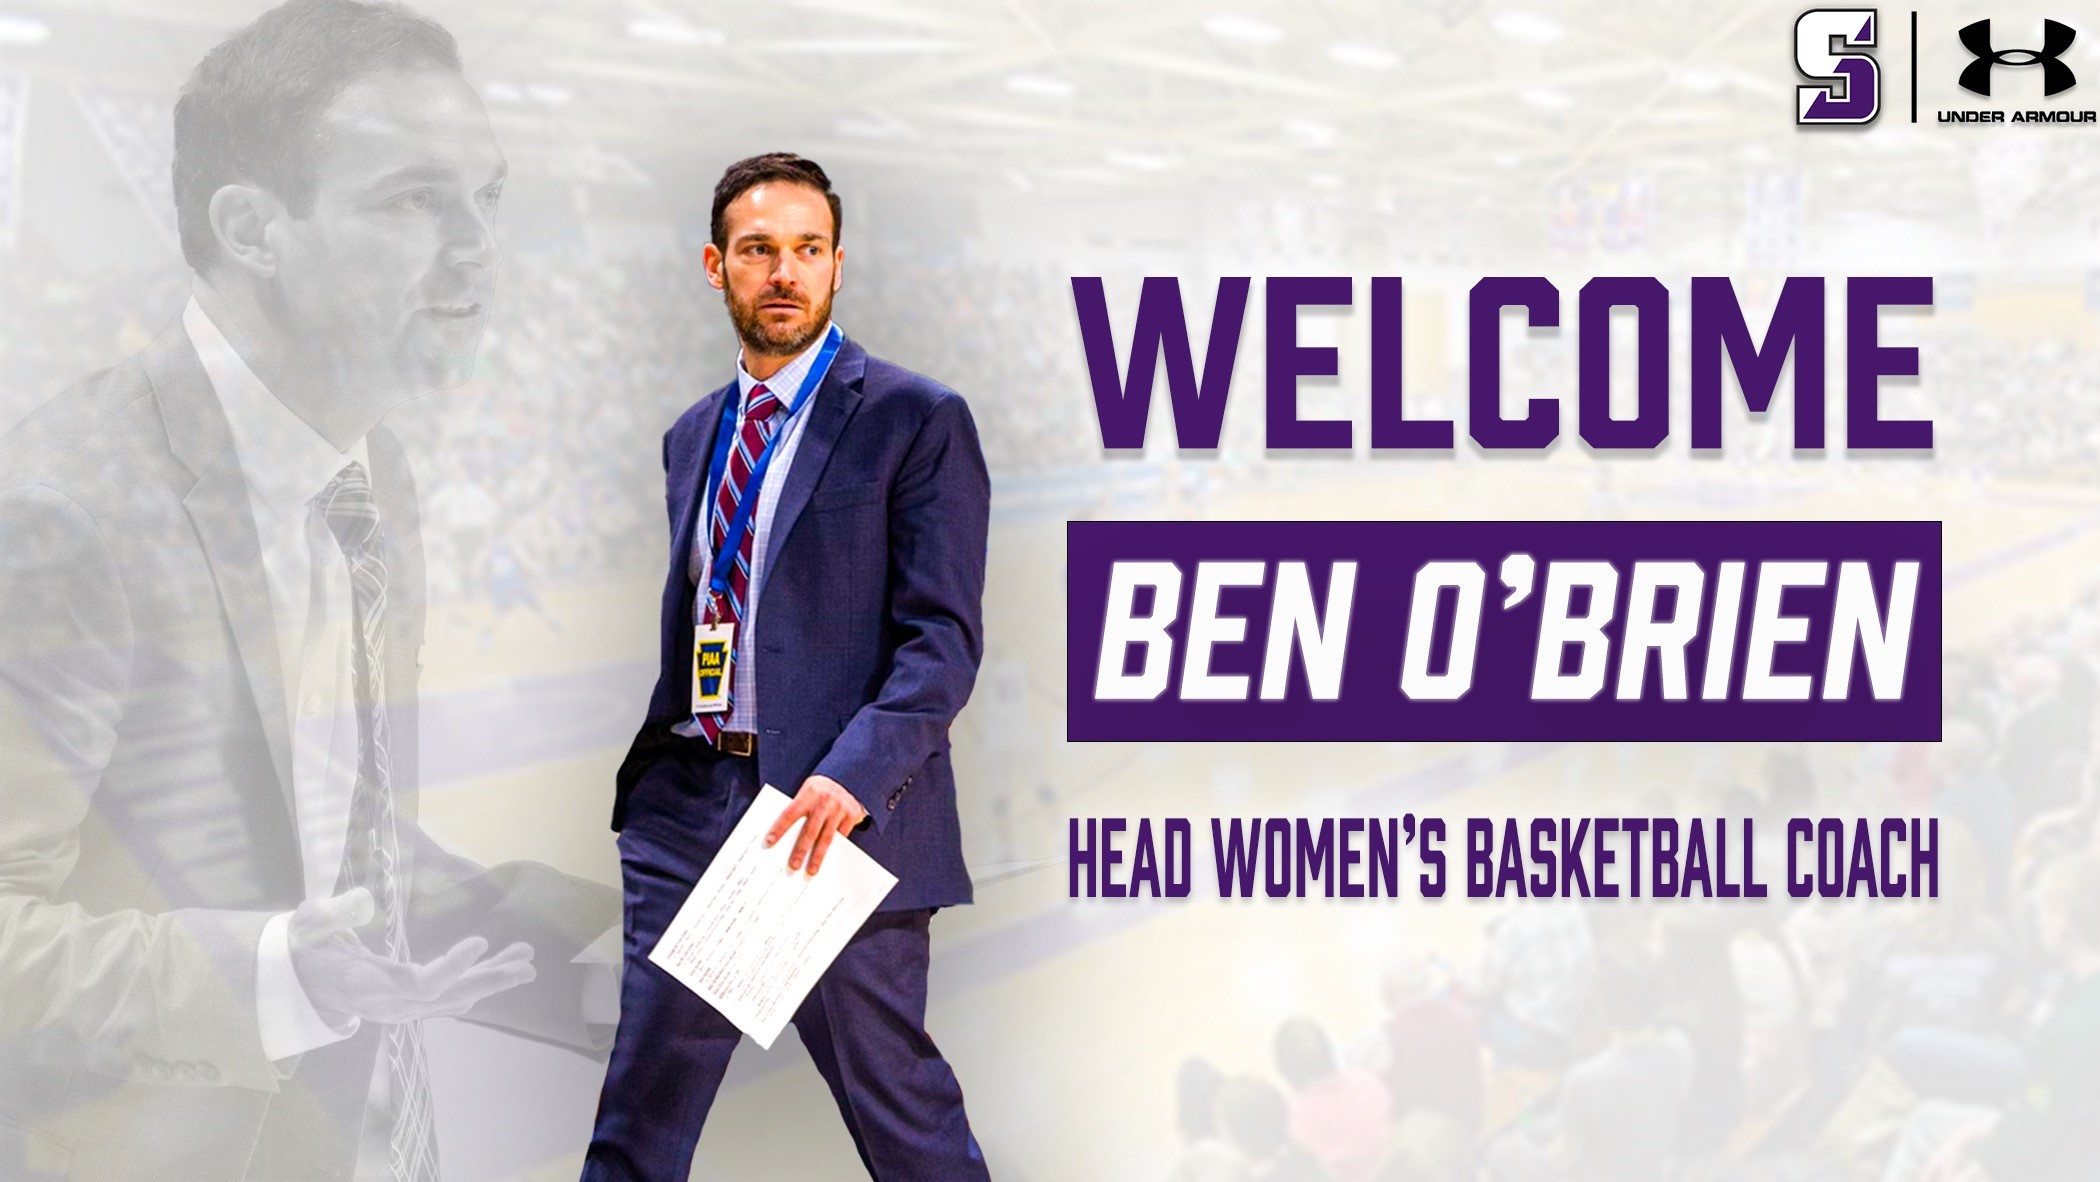 Photo of Ben O'Brien with text reading "Welcome Ben O'Brien head women's basketball coach"